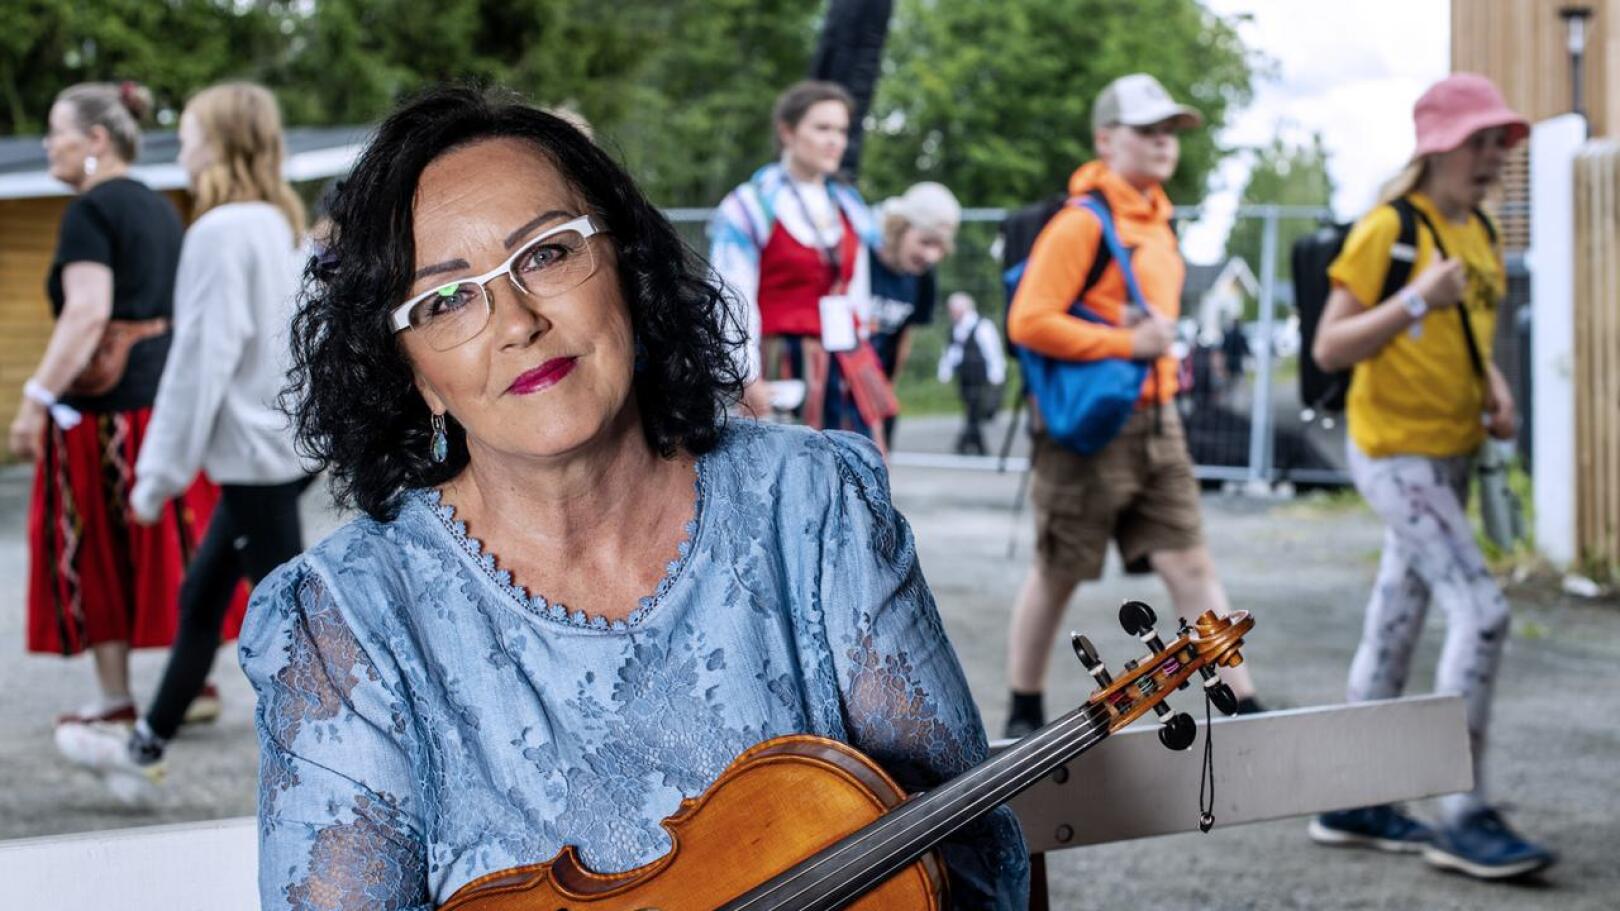 Mestaripelimanniksi nimetty Raila Järvelä on tehnyt elämäntyönsä viulunsoitonopettajana Keski-Pohjanmaan konservatoriossa.  